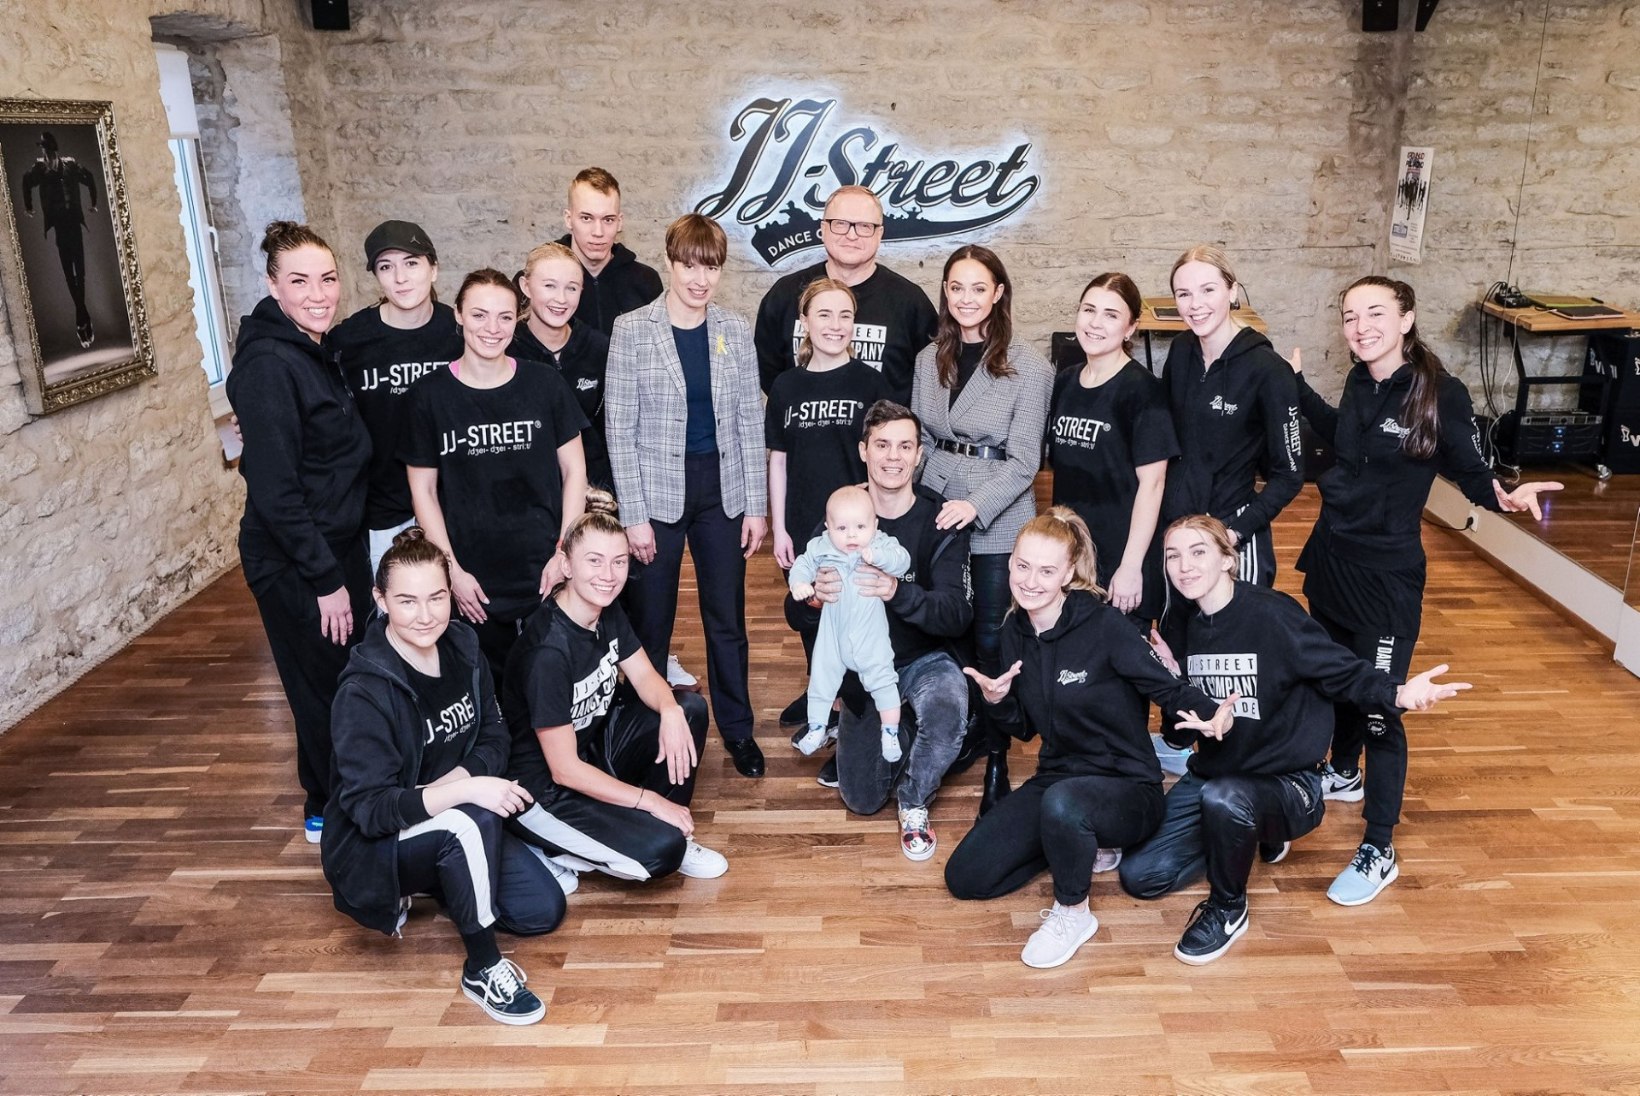 FOTO | President külastas JJ-Street tantsukooli: see oli üks särasilmsemaid pilte Eestis